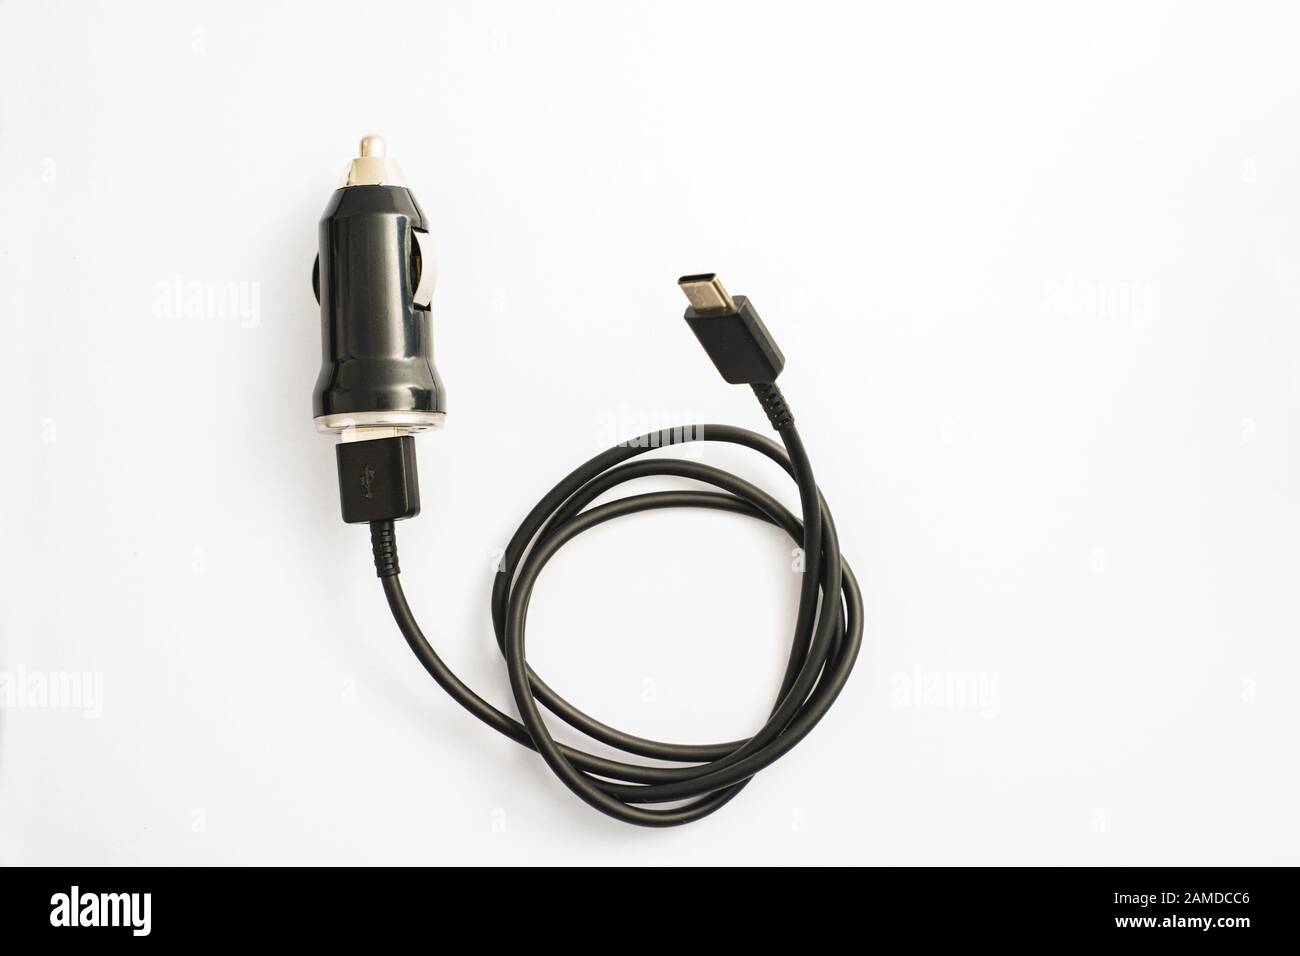 Le chargeur de voiture noire avec sortie USB Câble de connexion. Une photo prise sur un chargeur de voiture noire avec sortie USB Câble de connexion contre un fond blanc Banque D'Images